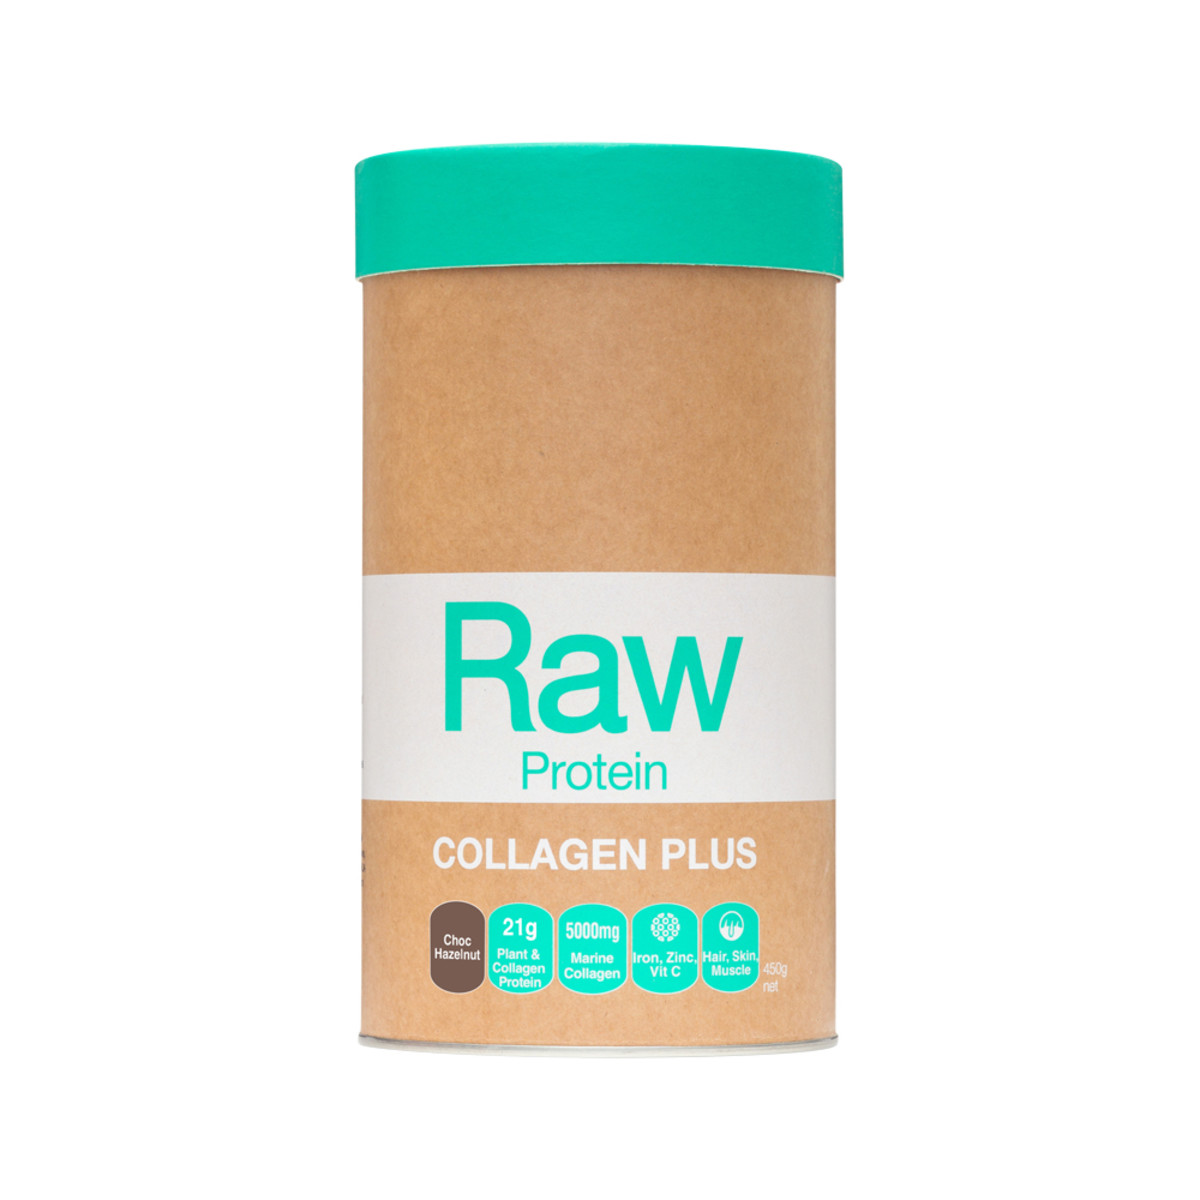 AMAZONIA - Raw Protein Collagen Plus Choc Hazelnut